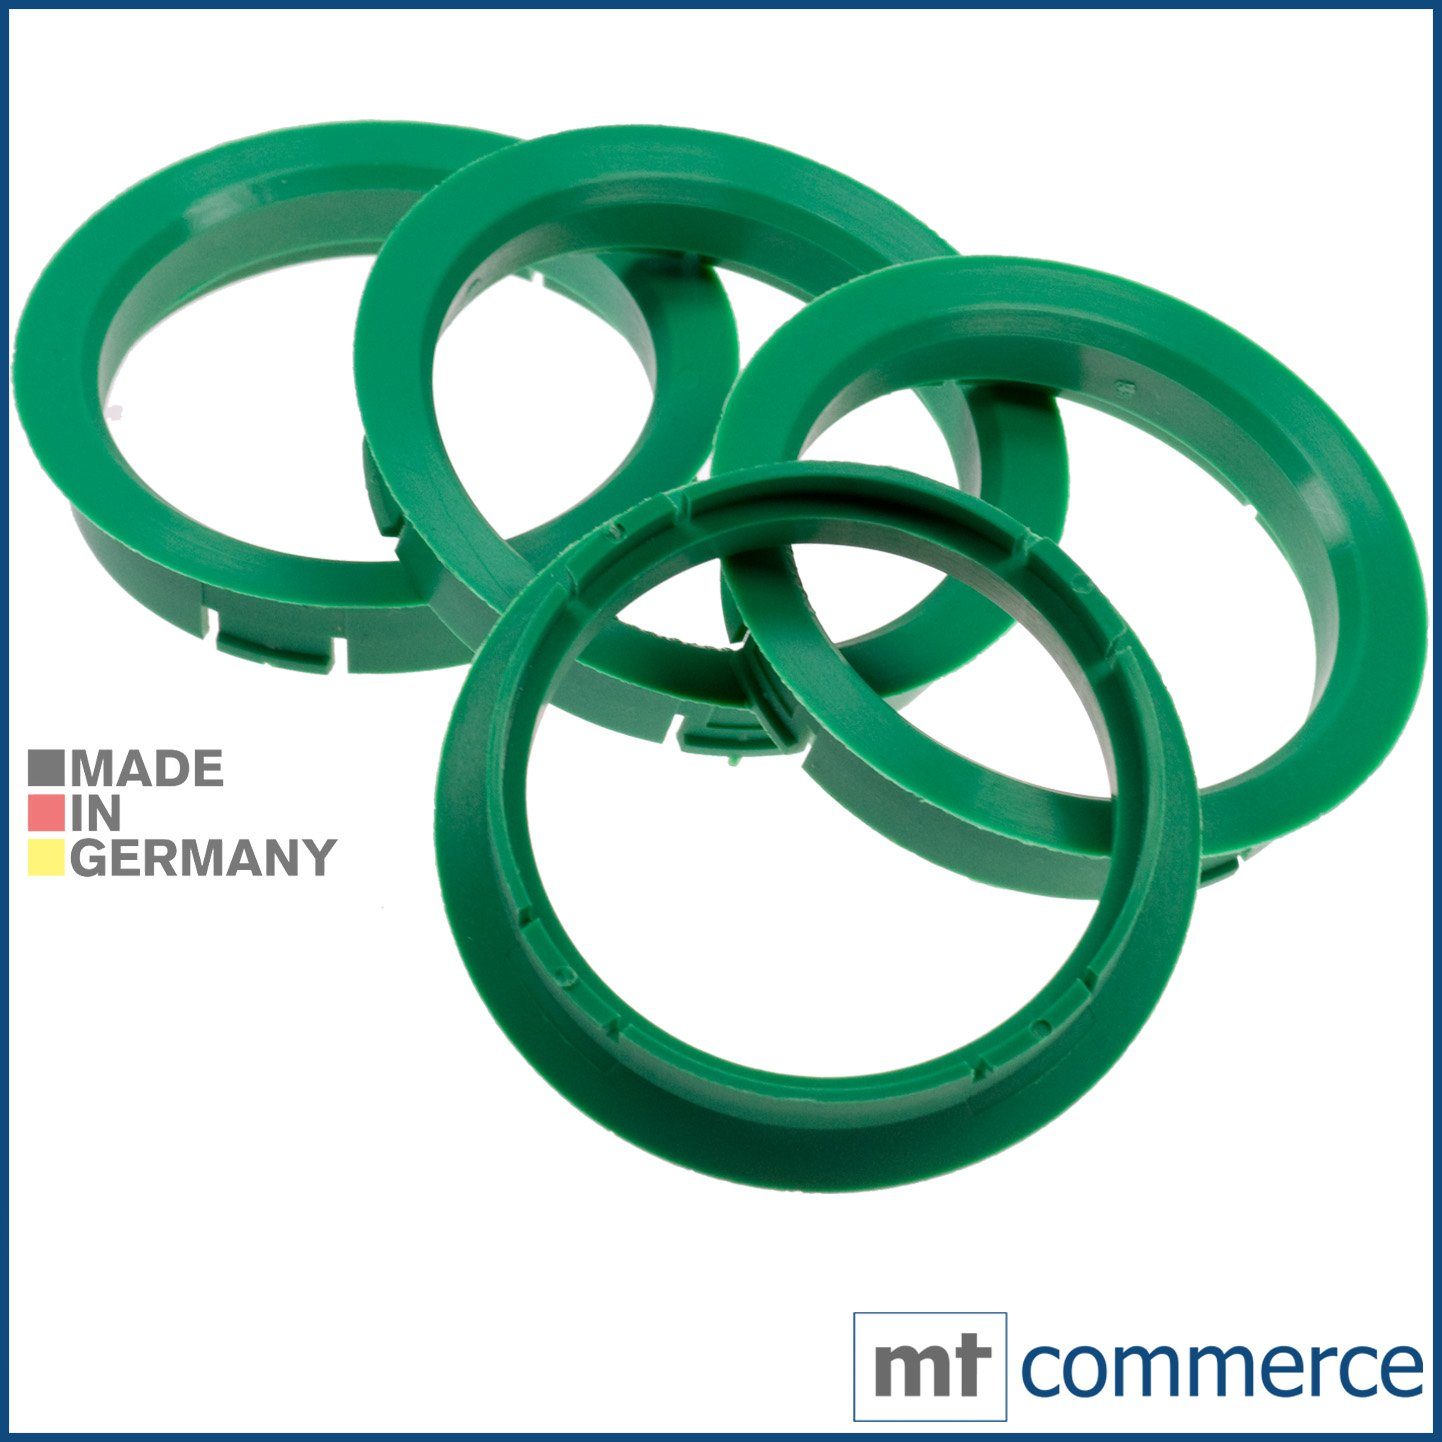 Felgen Maße: in mm 56,1 64,0 x Zentrierringe 4X Germany, Ringe Made Reifenstift grün RKC